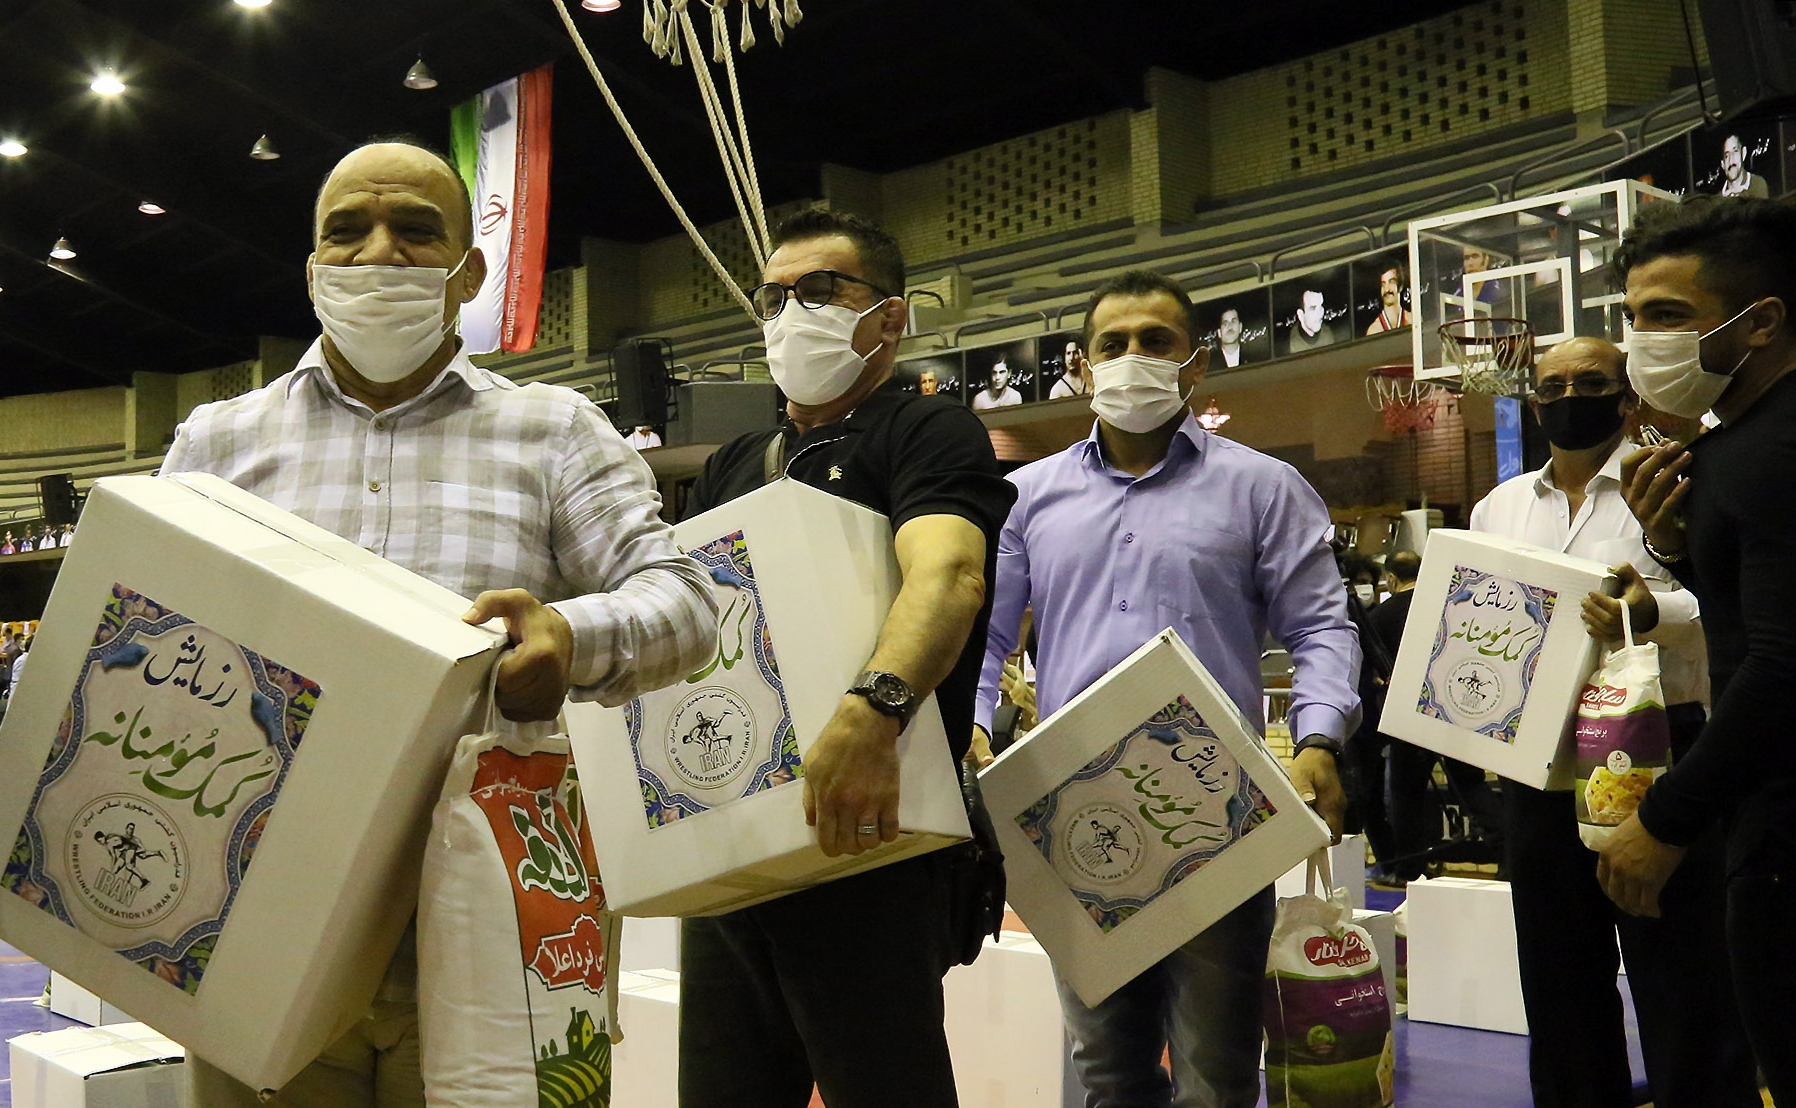 برگزاری مراسم پویش کمک مومنانه قهرمانان کشتی/ انتقال بسته های معیشتی برای اهداء به اقشار آسیب پذیر